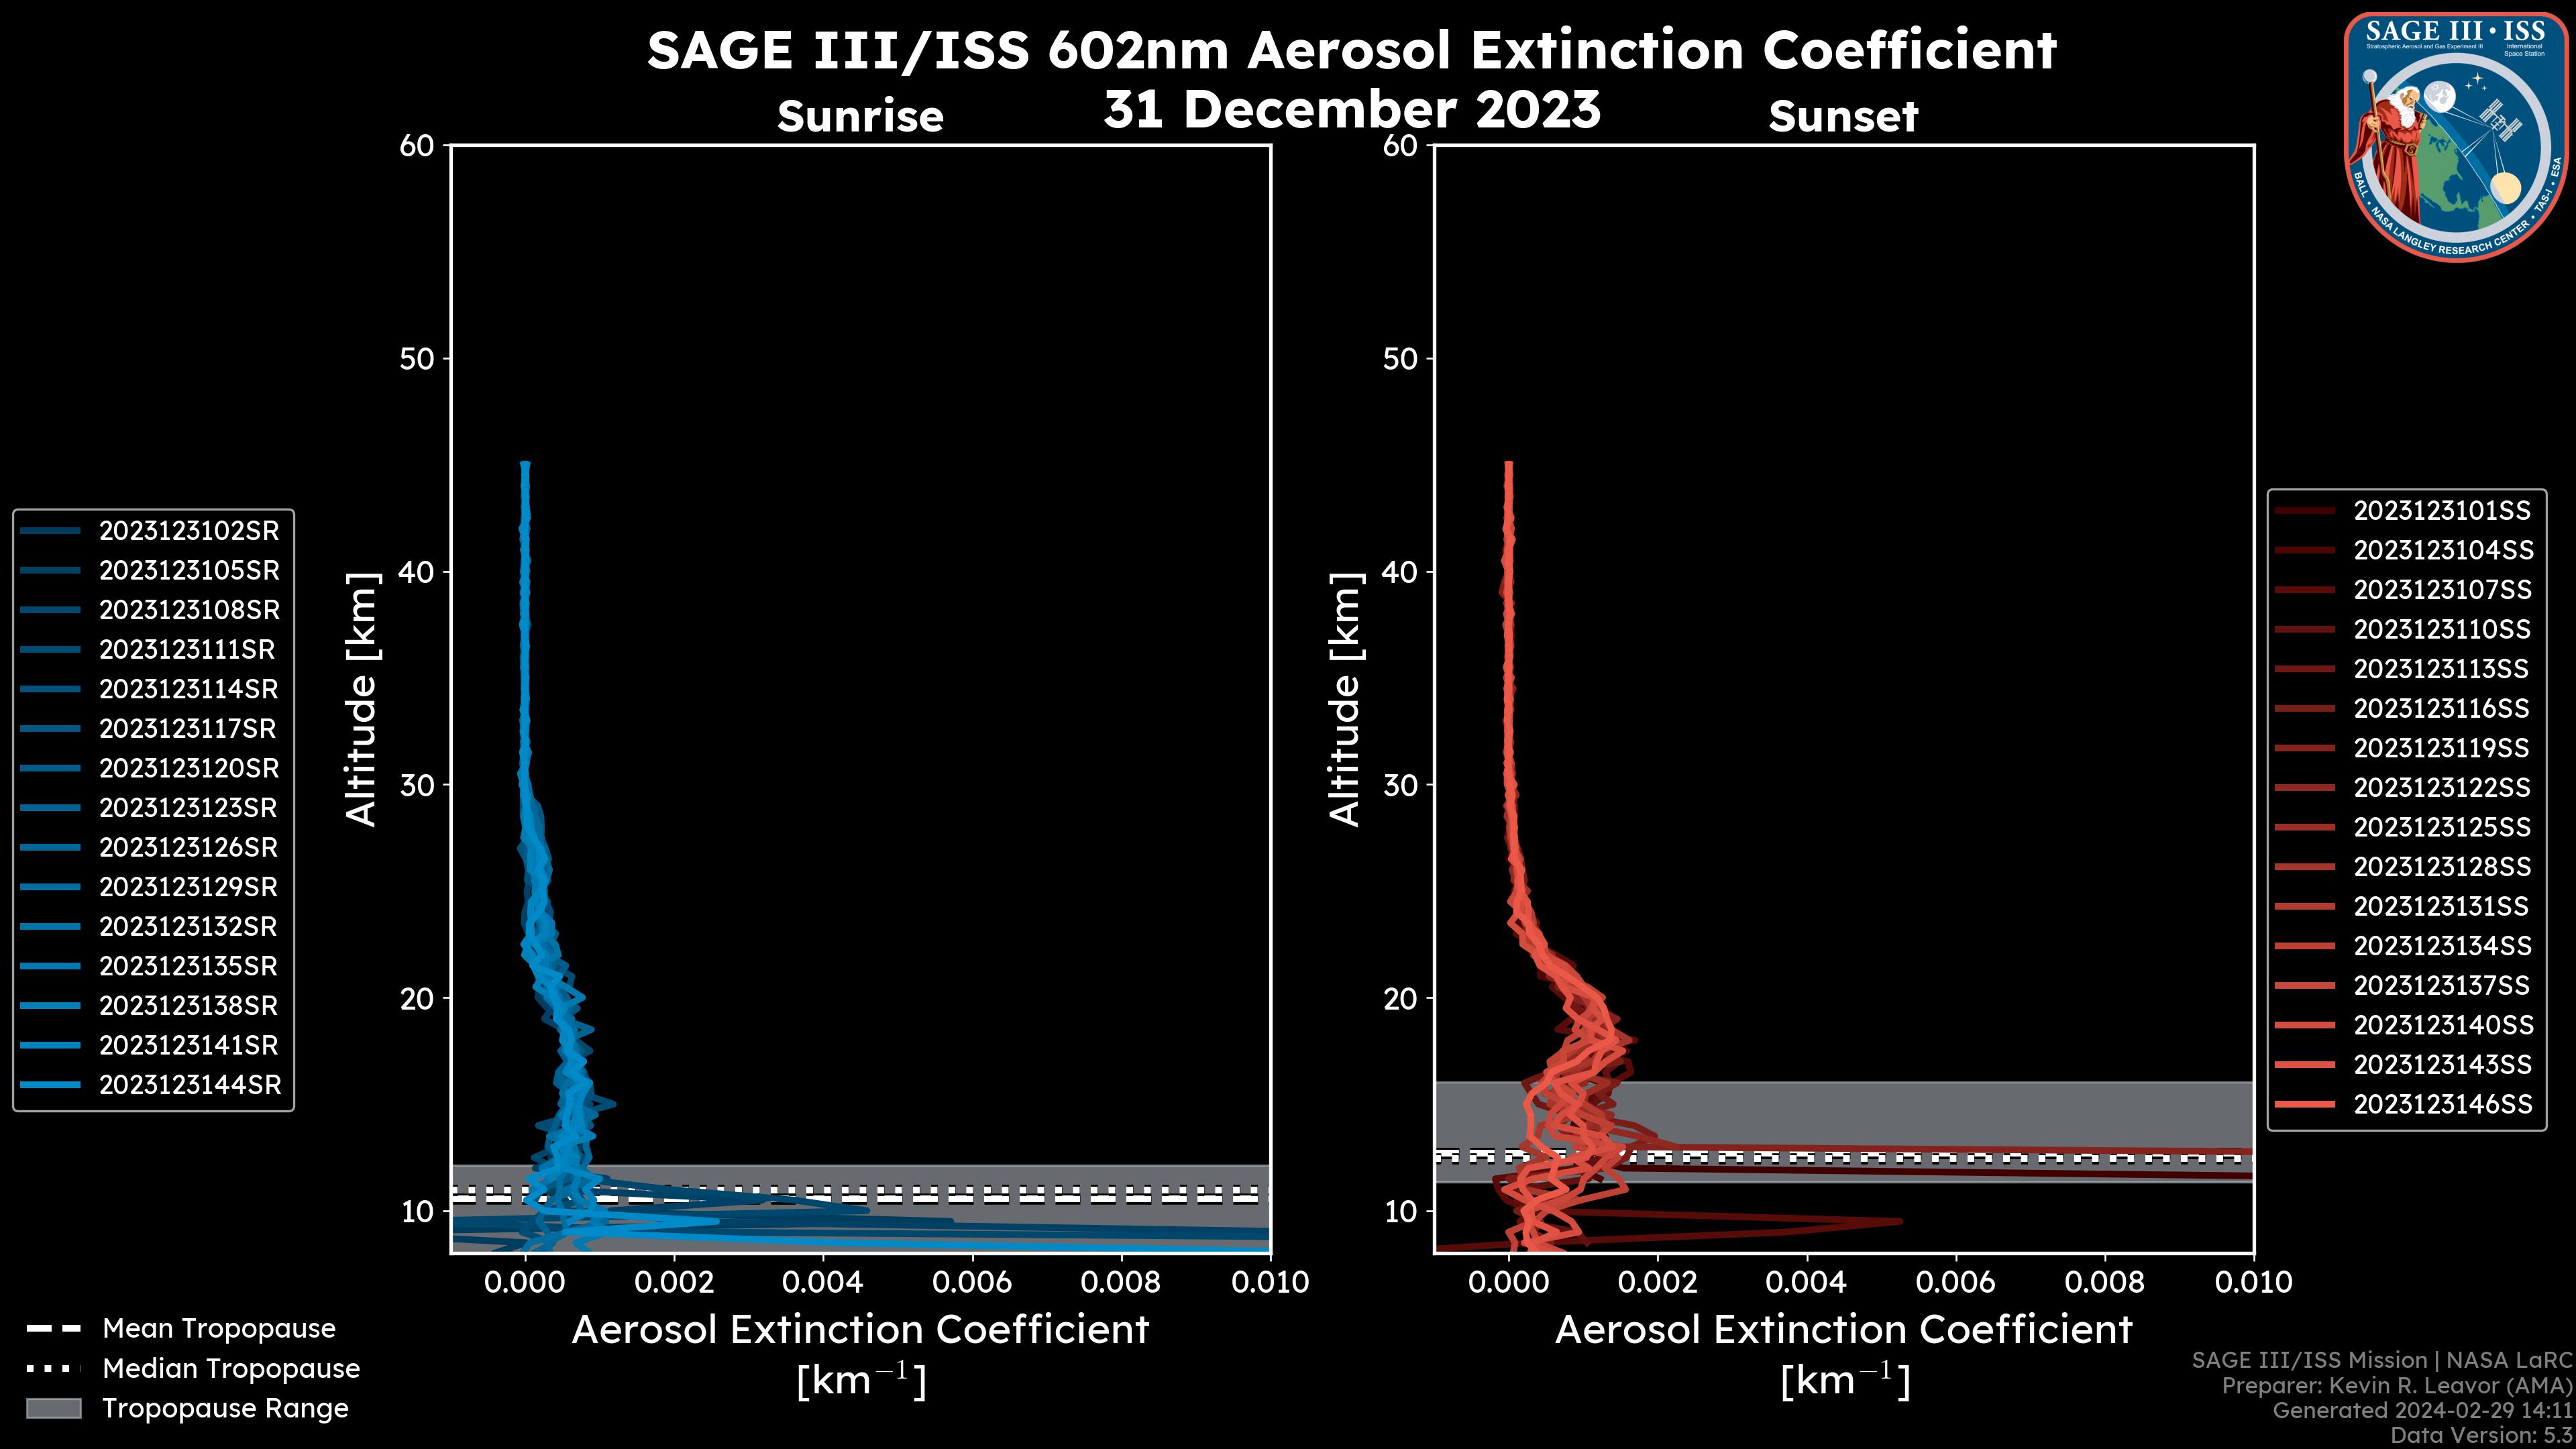 602nm Aerosol Extinction Coefficient